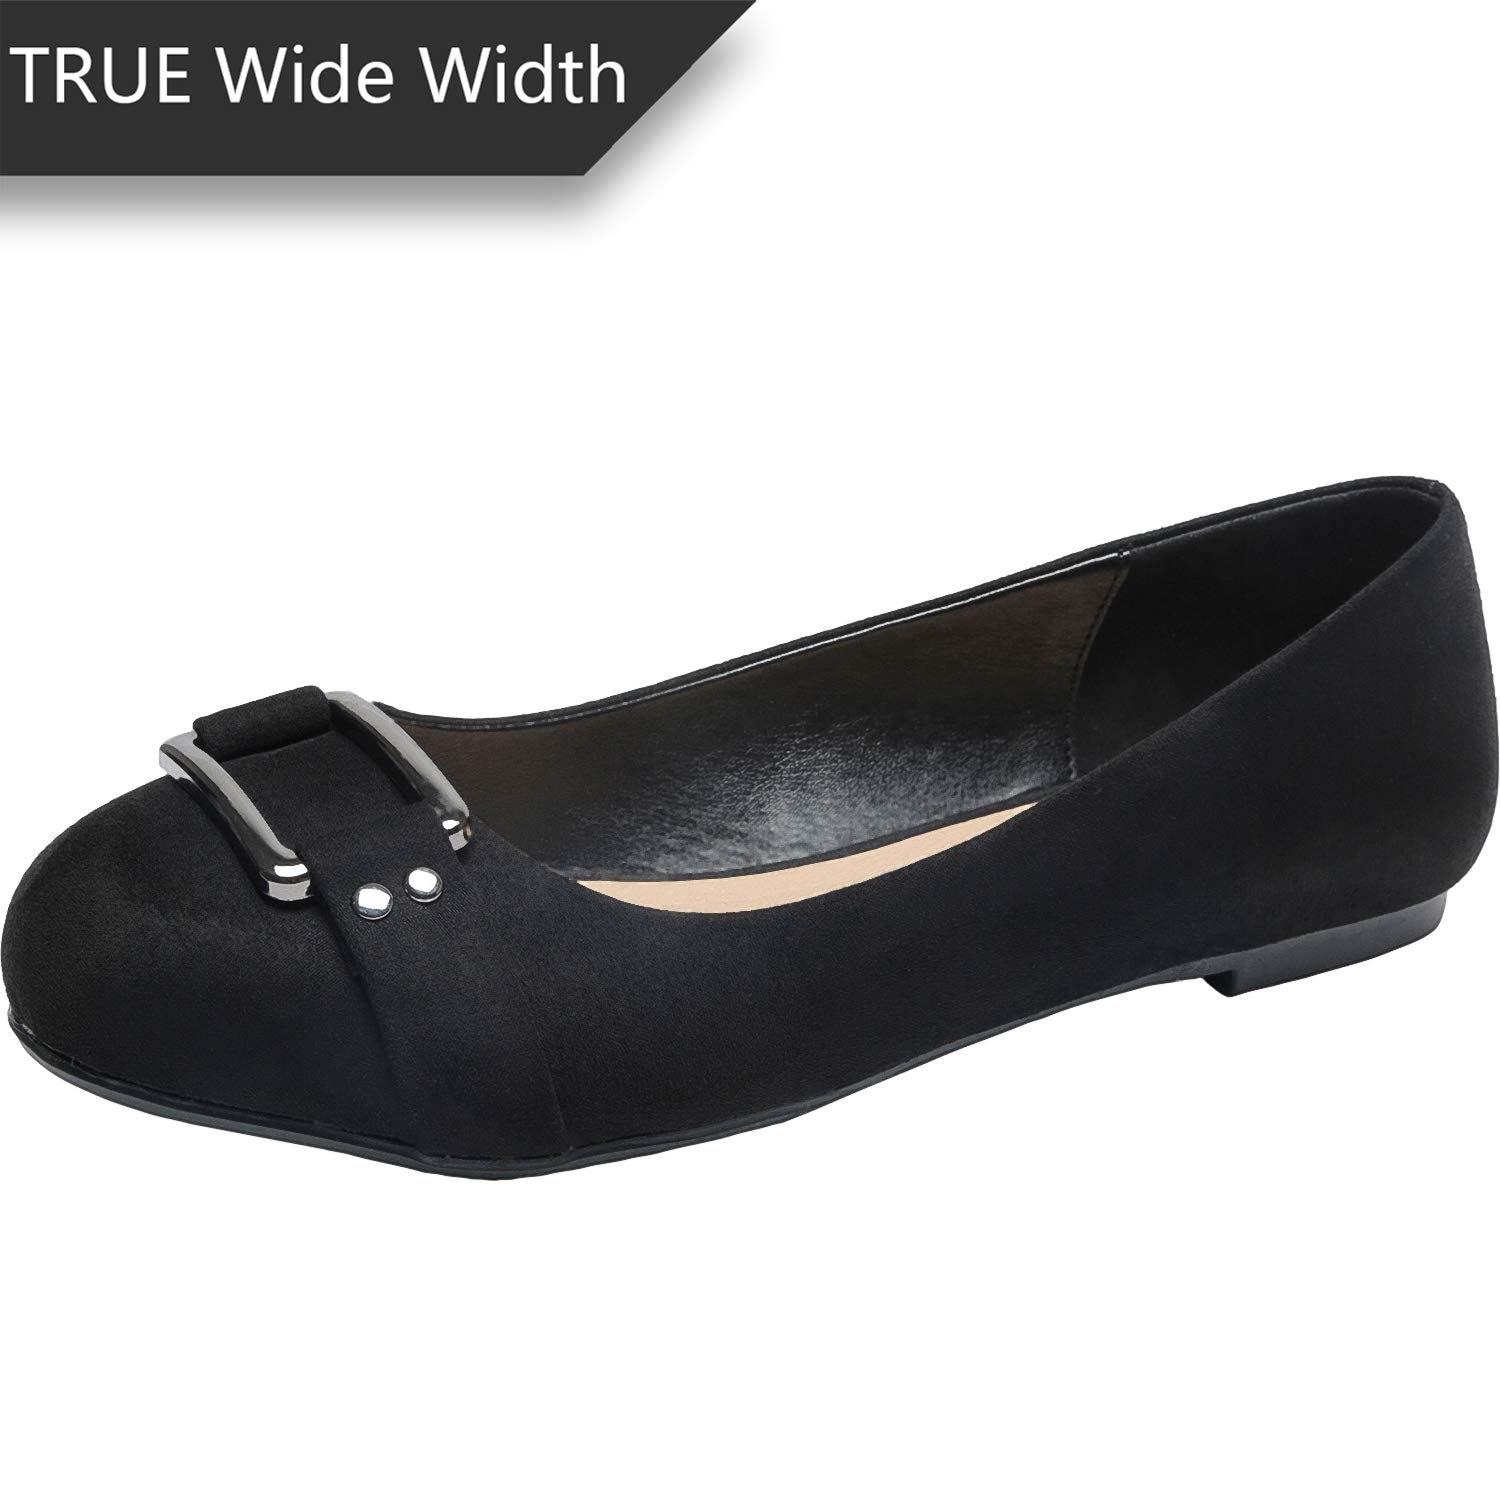 true wide width shoes